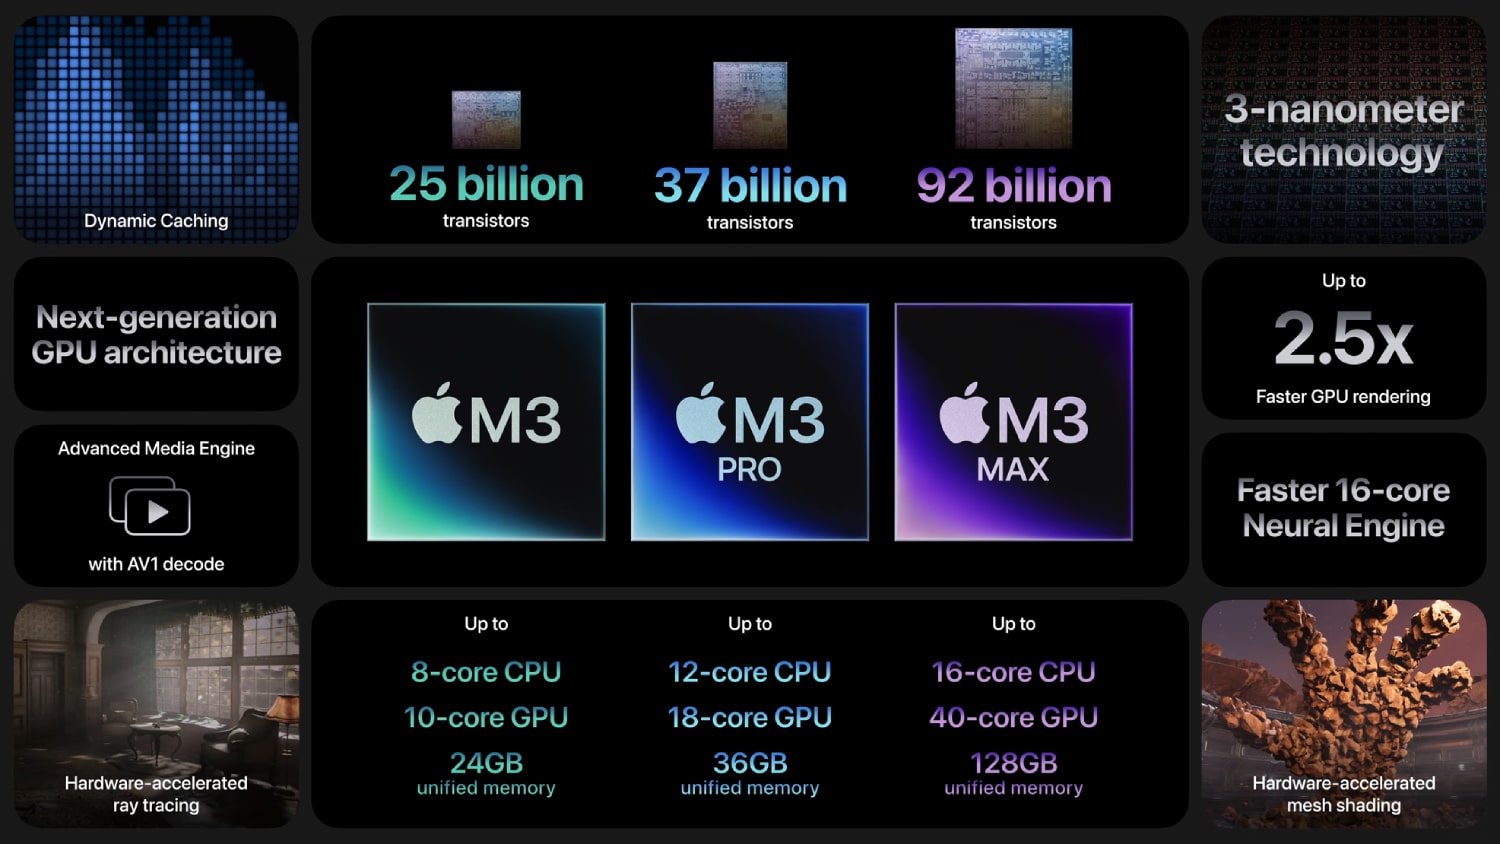 एम3, एम3 प्रो और एम3 मैक्स सहित एप्पल की एम3 श्रृंखला के चिप्स के आंकड़े और विशेषताएं।